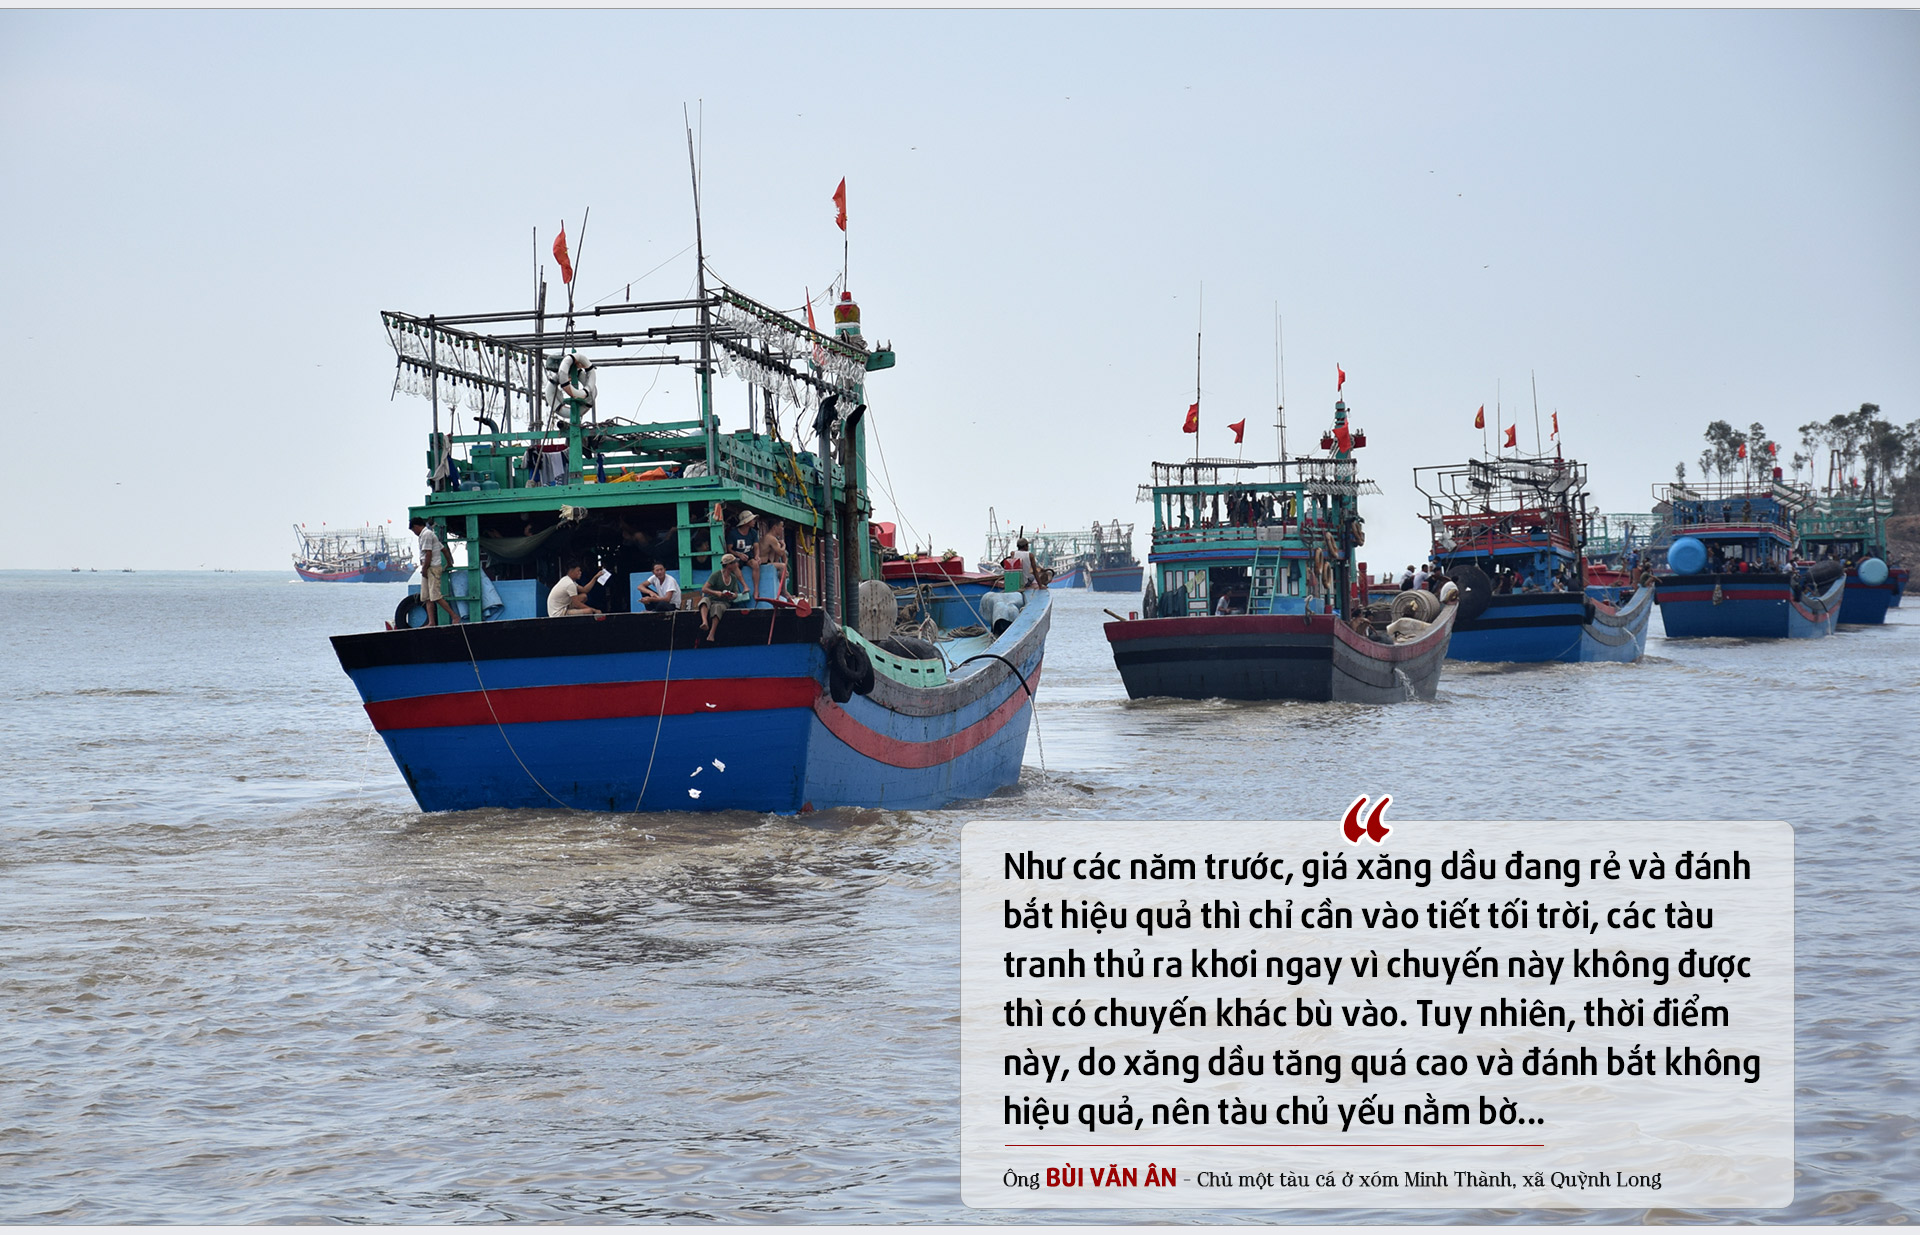 Tàu cá của ngư dân Nghệ An vươn khơi khai thác hải sản. Ảnh: Xuân Hoàng